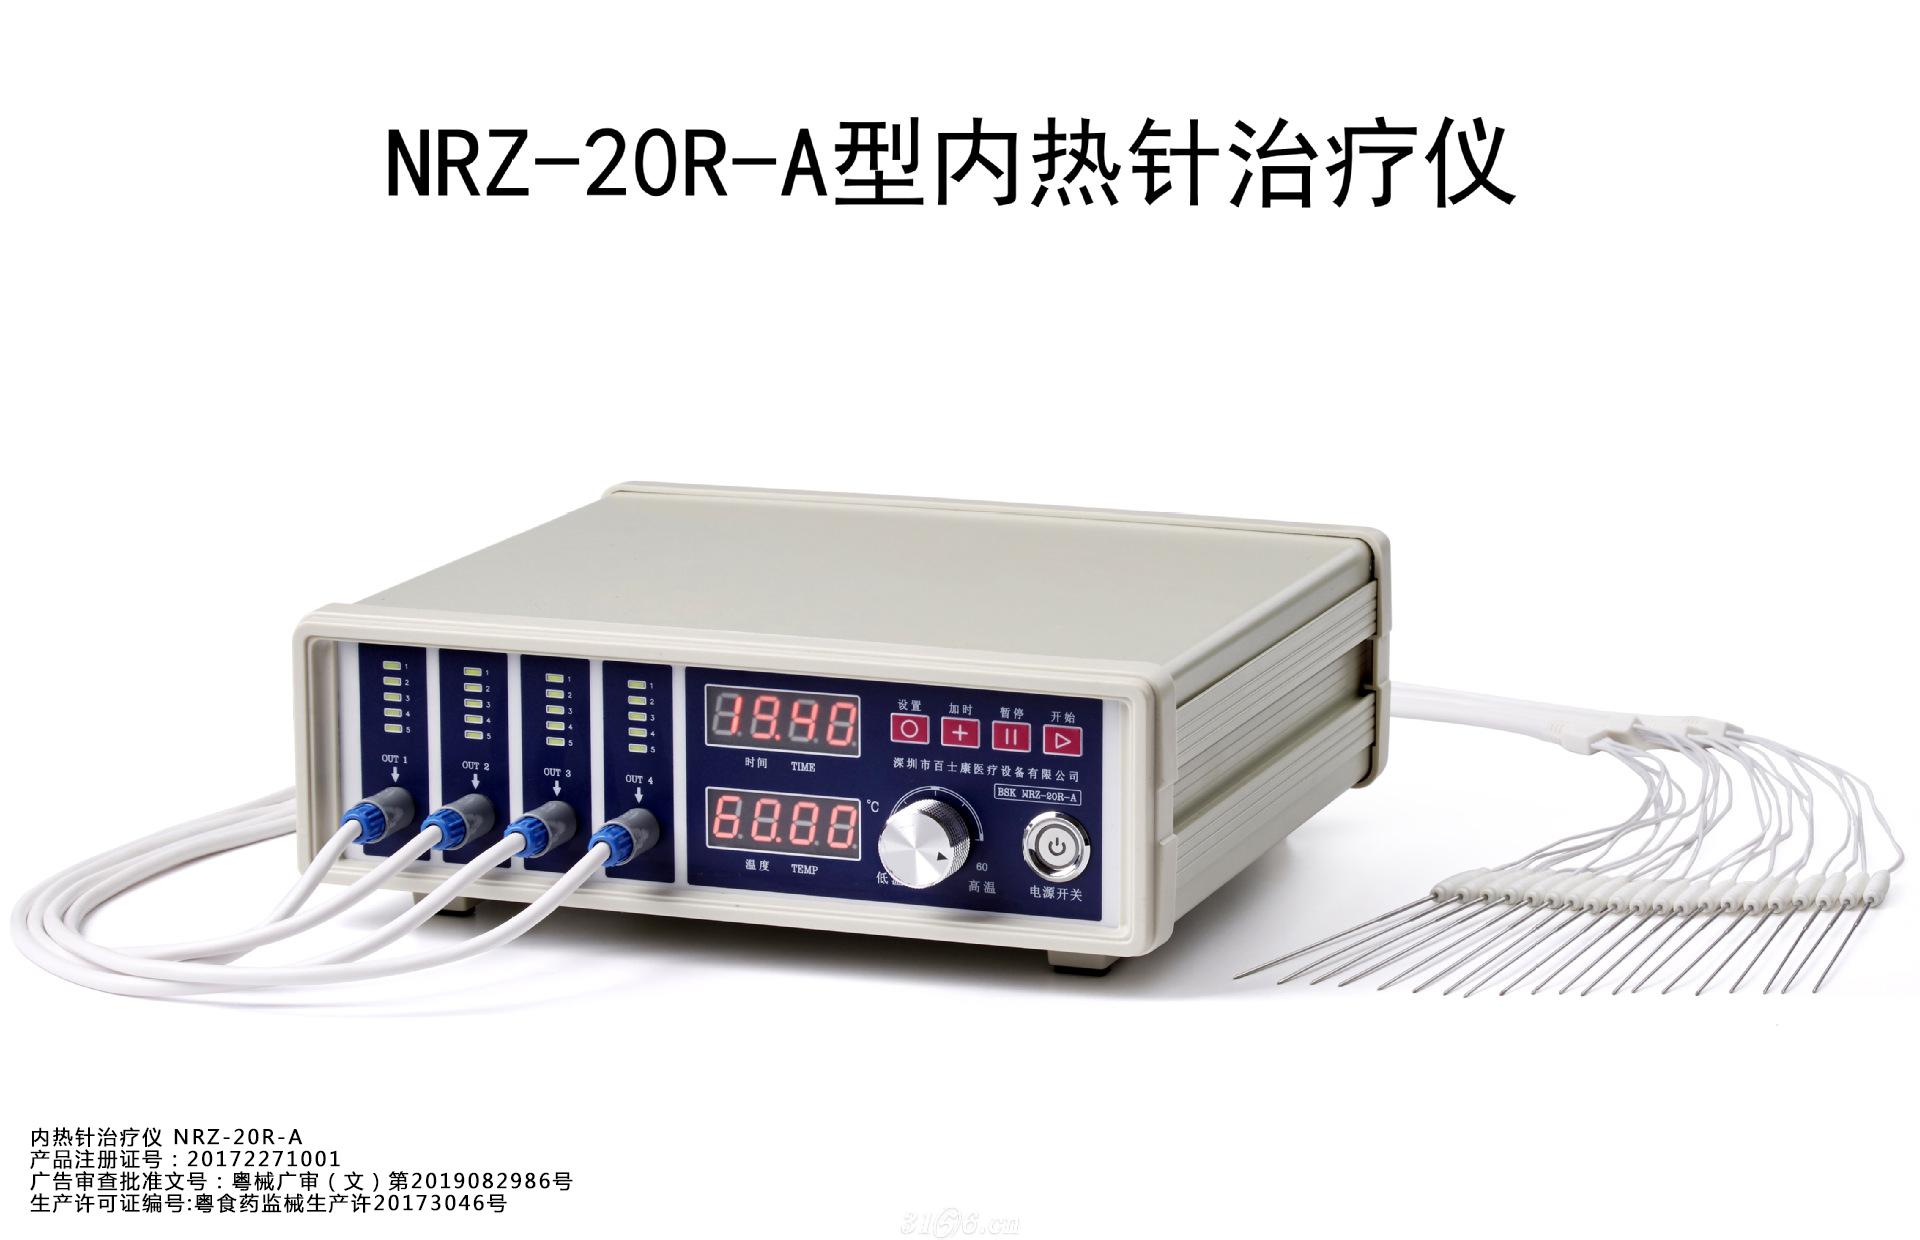 内热针治疗仪 NRZ-20R-A